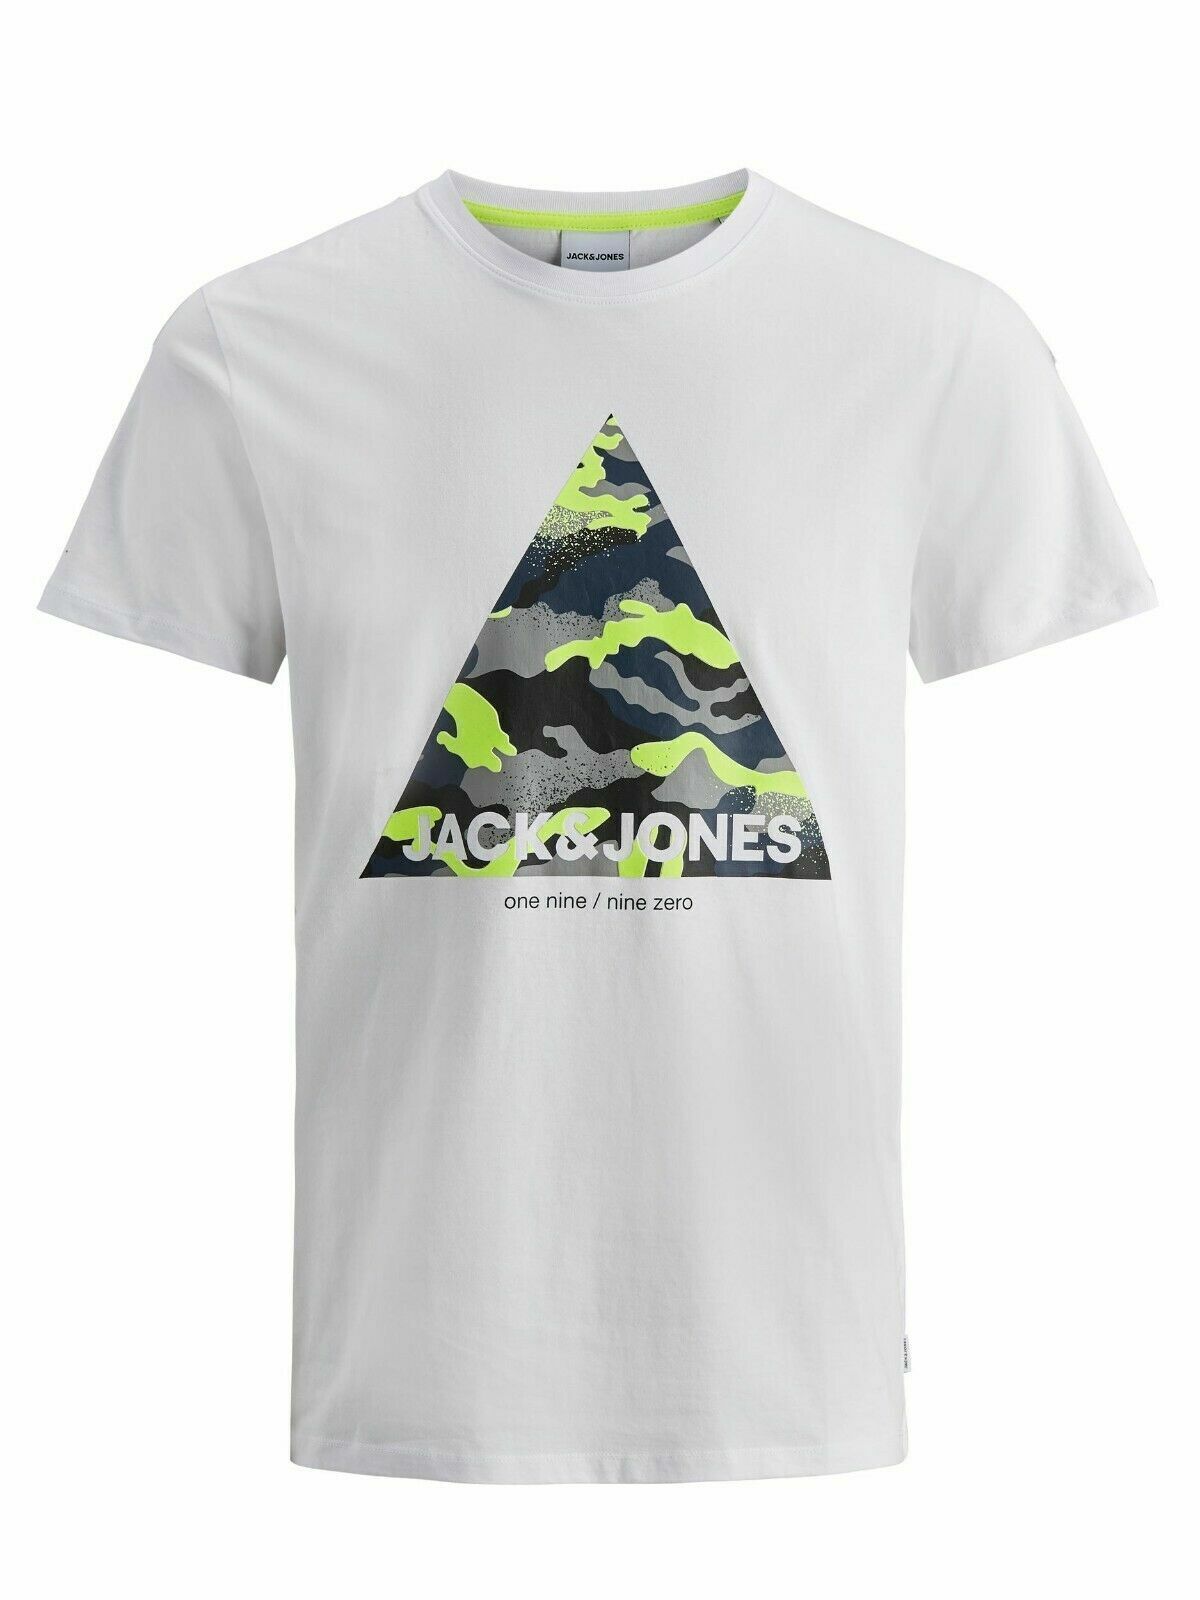 Mens Jack & Jones Designer Crew Neck T-shirts Short Sleeve Casual Tee Top